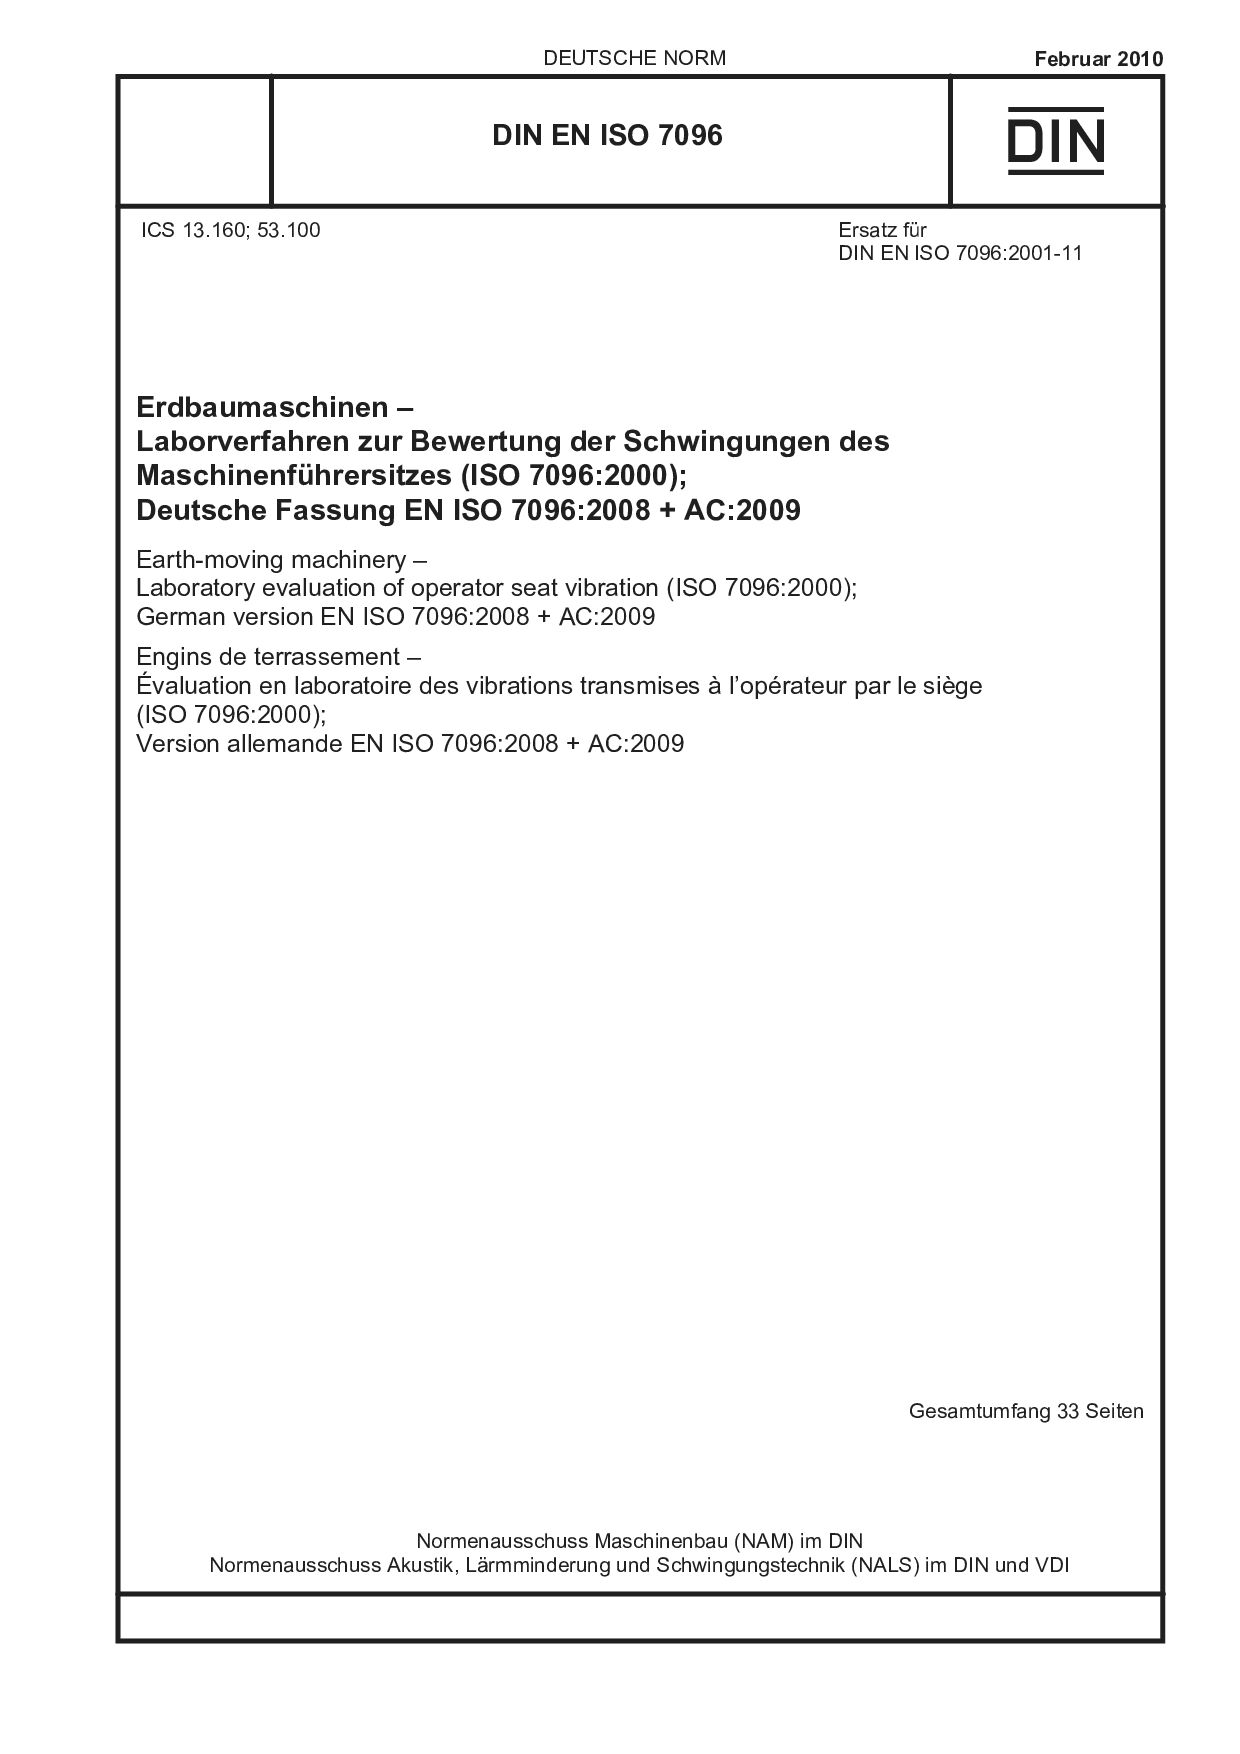 DIN EN ISO 7096:2010封面图